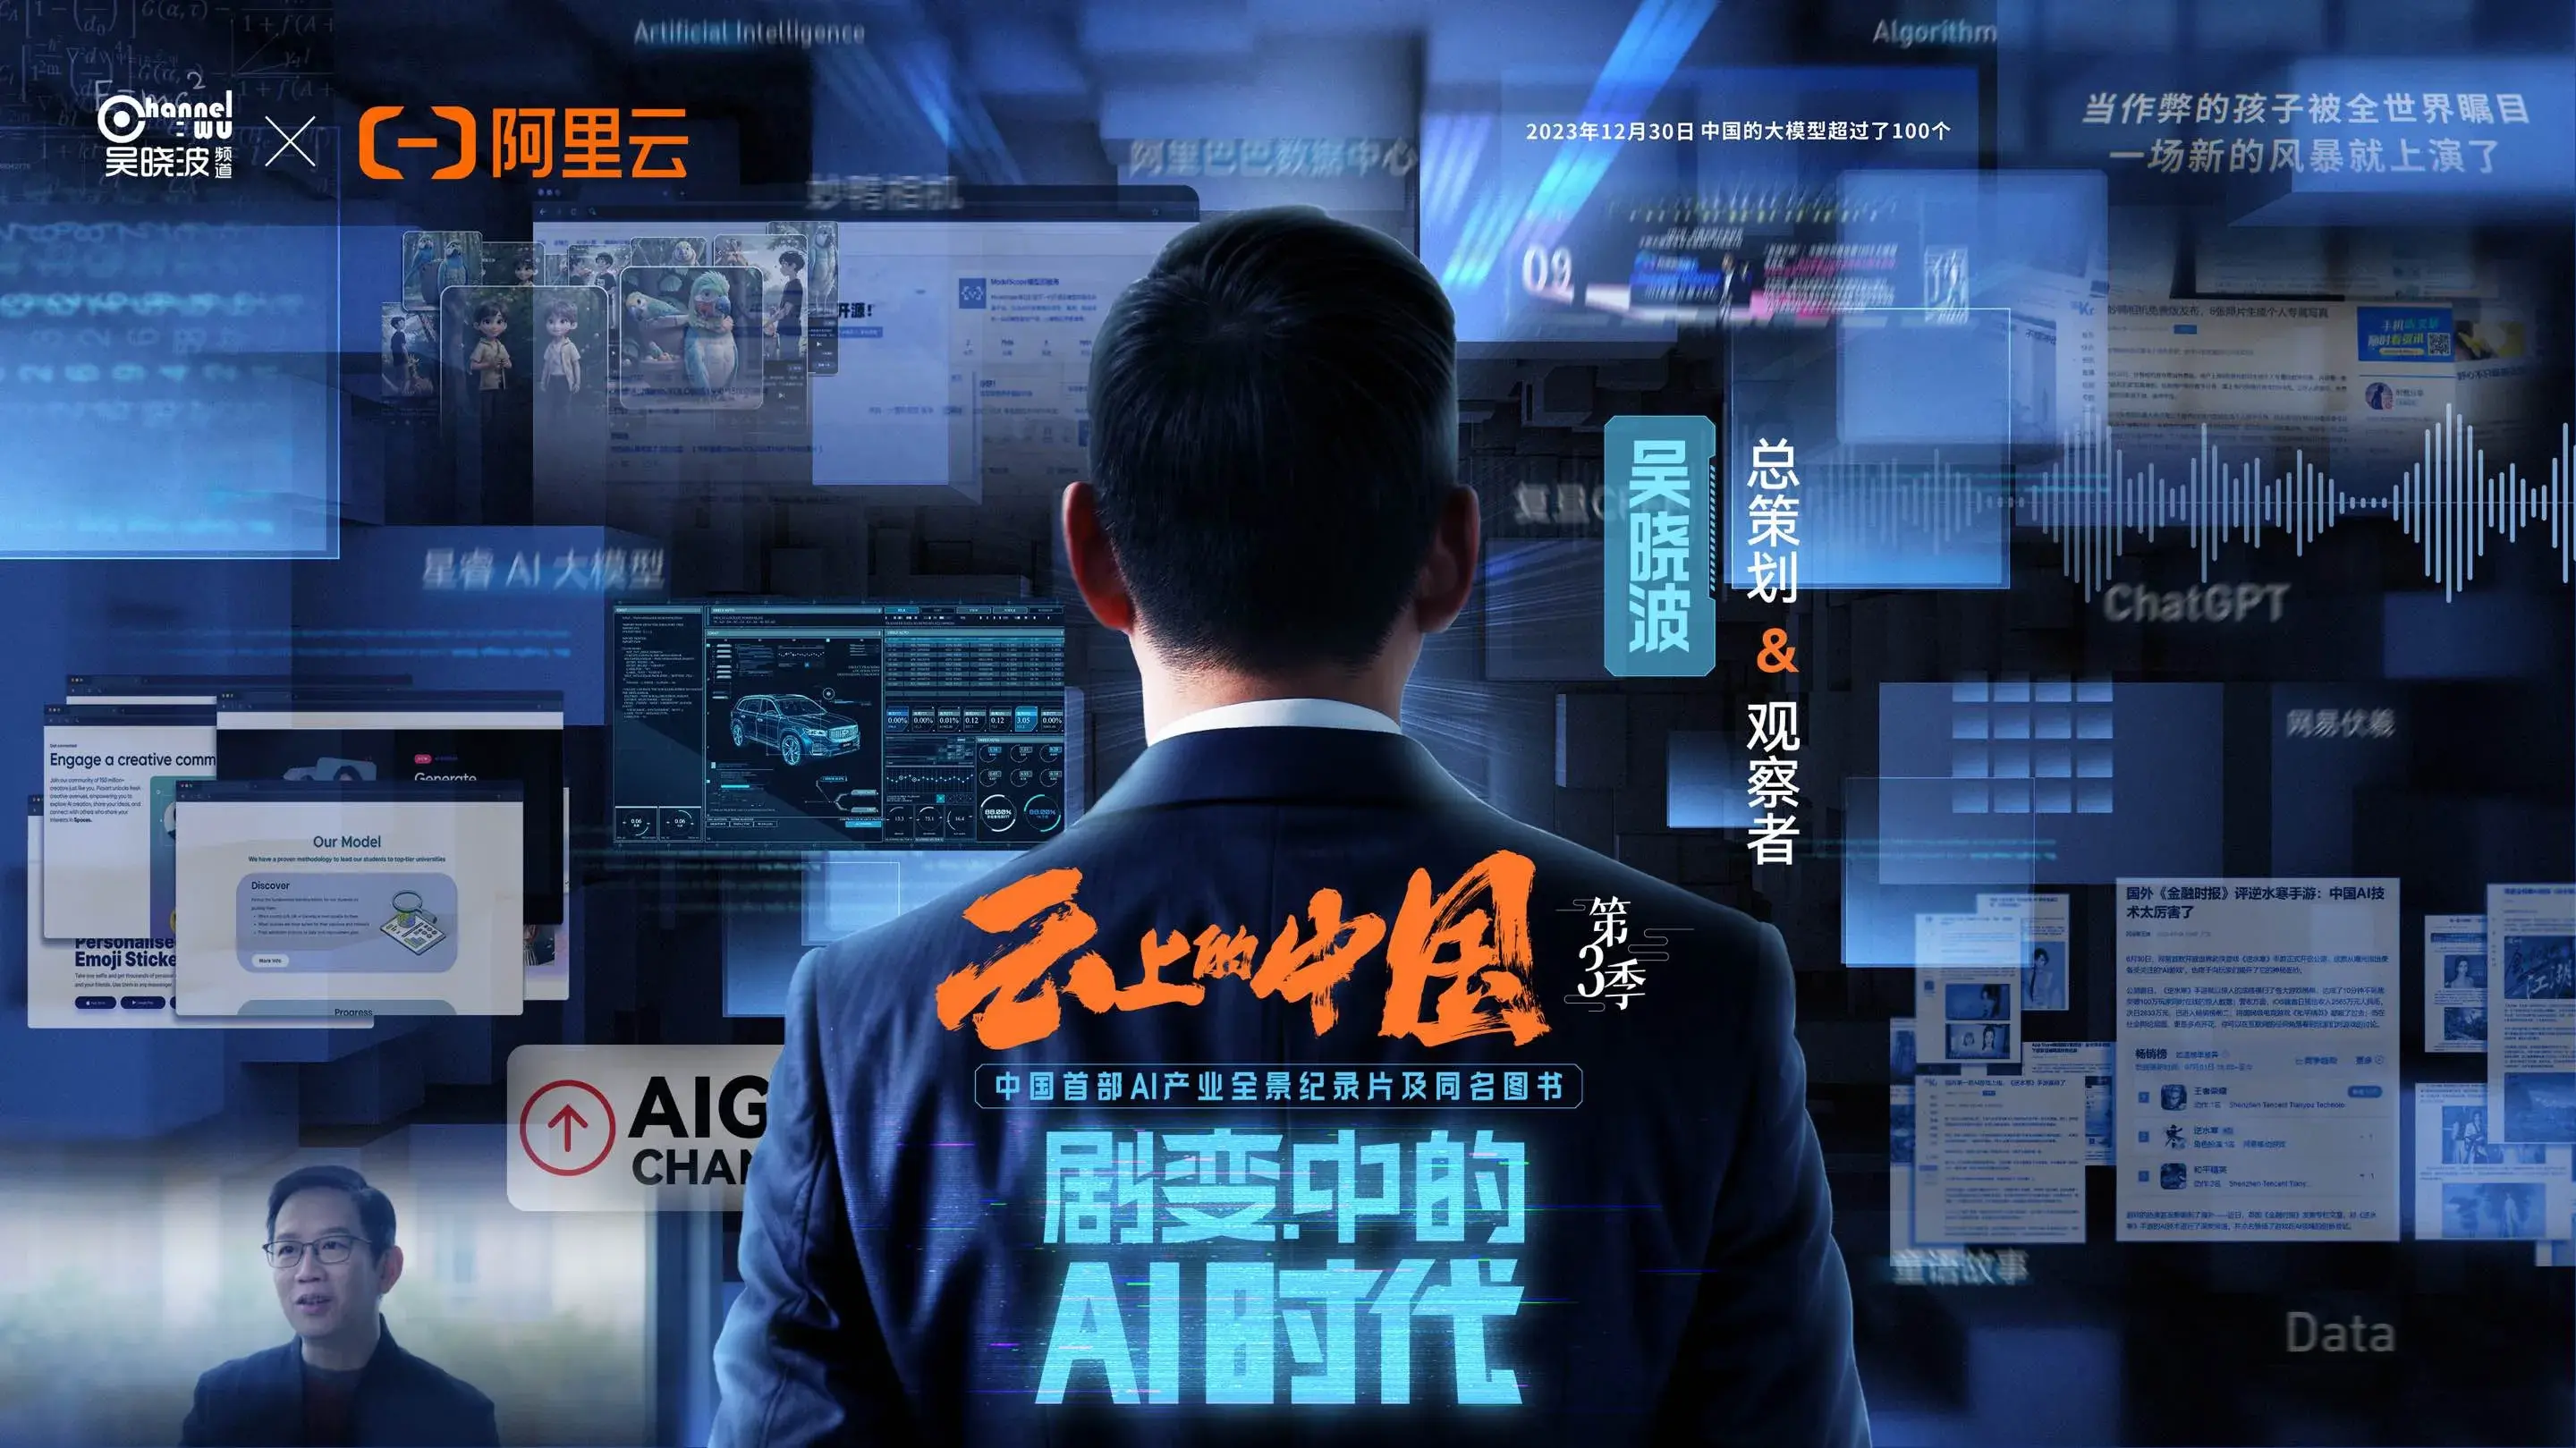 从游戏到实体《云上的中国3》深度解读网易伏羲的AI技术应用探索